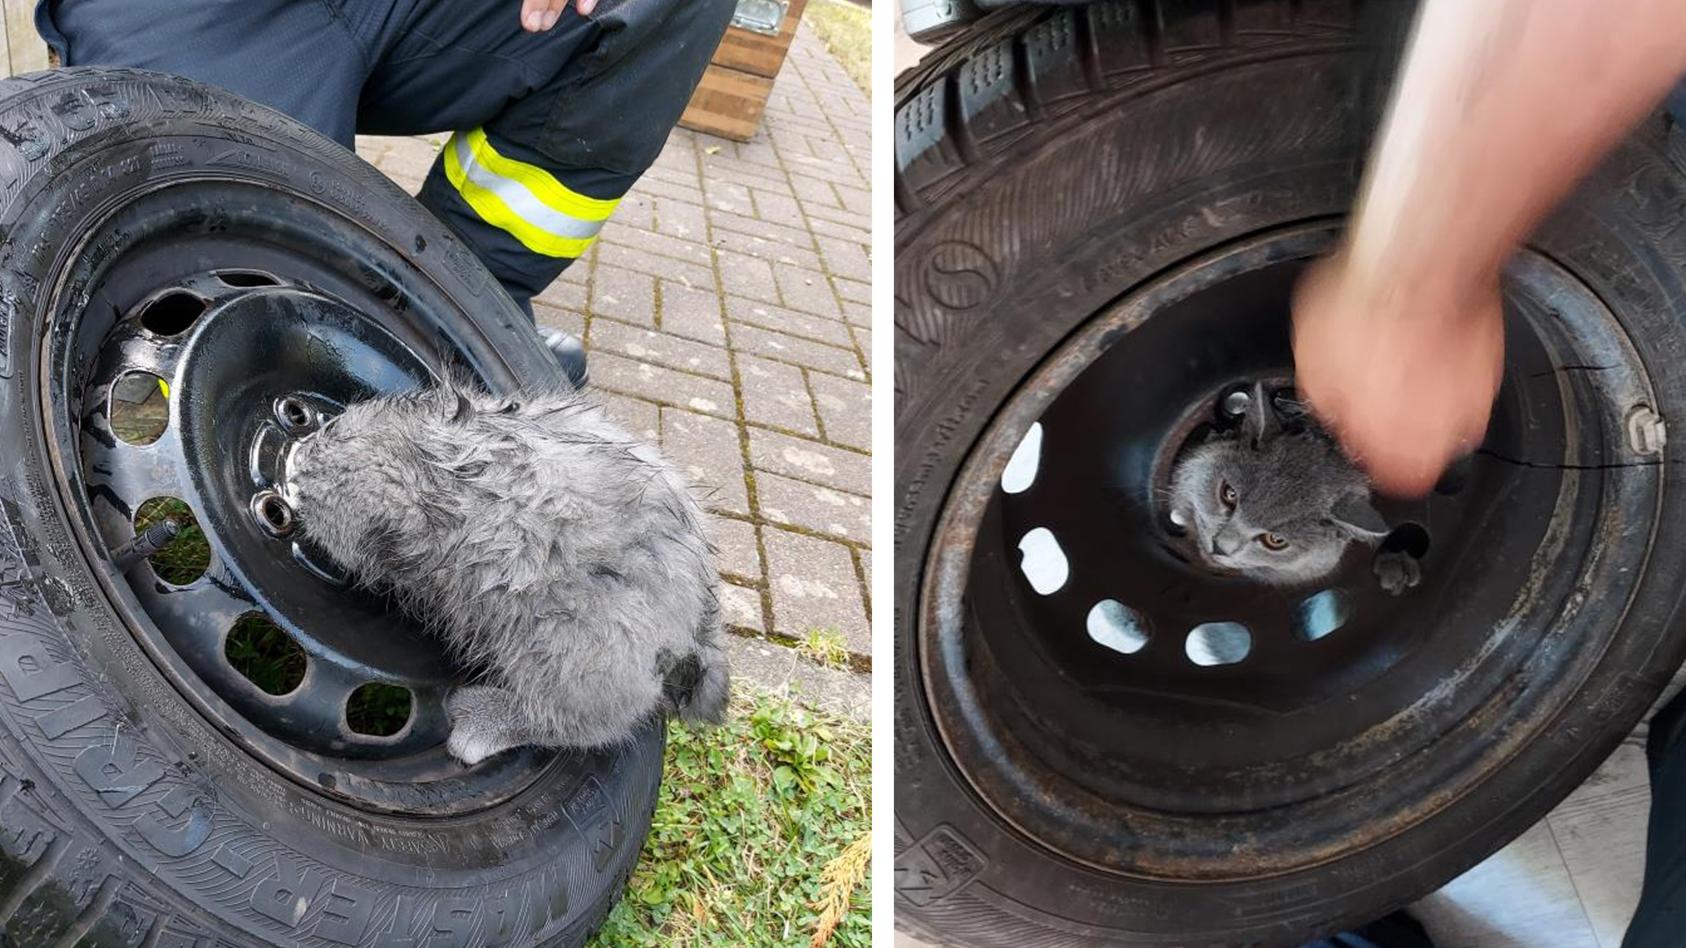 Feuerwehr Bad Soden-Salmünster befreit Katze aus Stahlfelge.